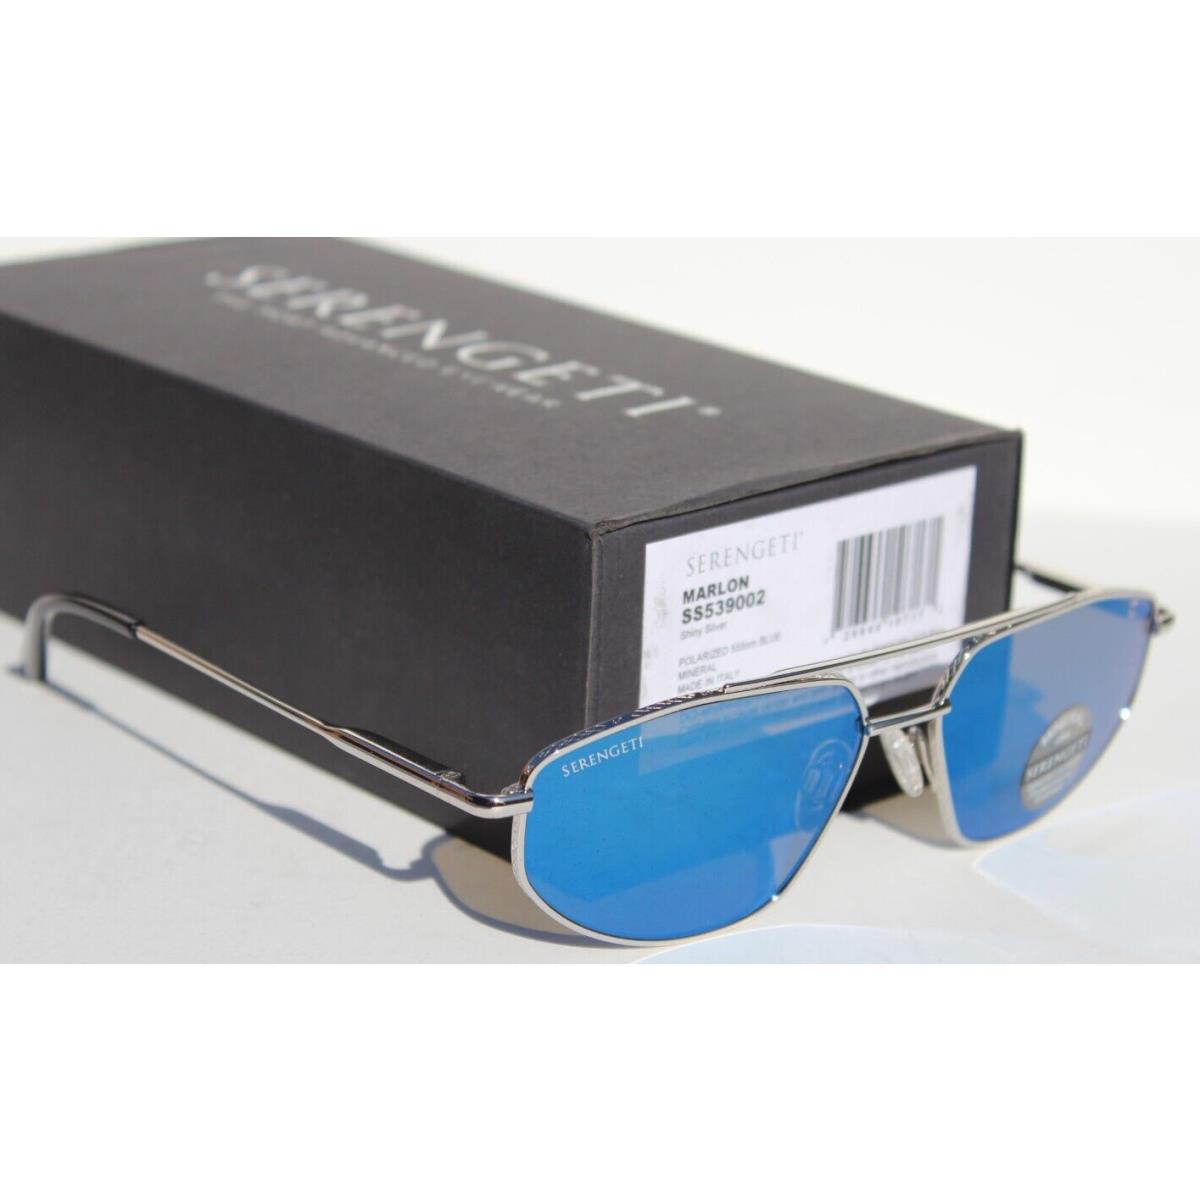 Serengeti Marlon Polarized Sunglasses Shiny Silver/555nm Blue SS539002 Italy